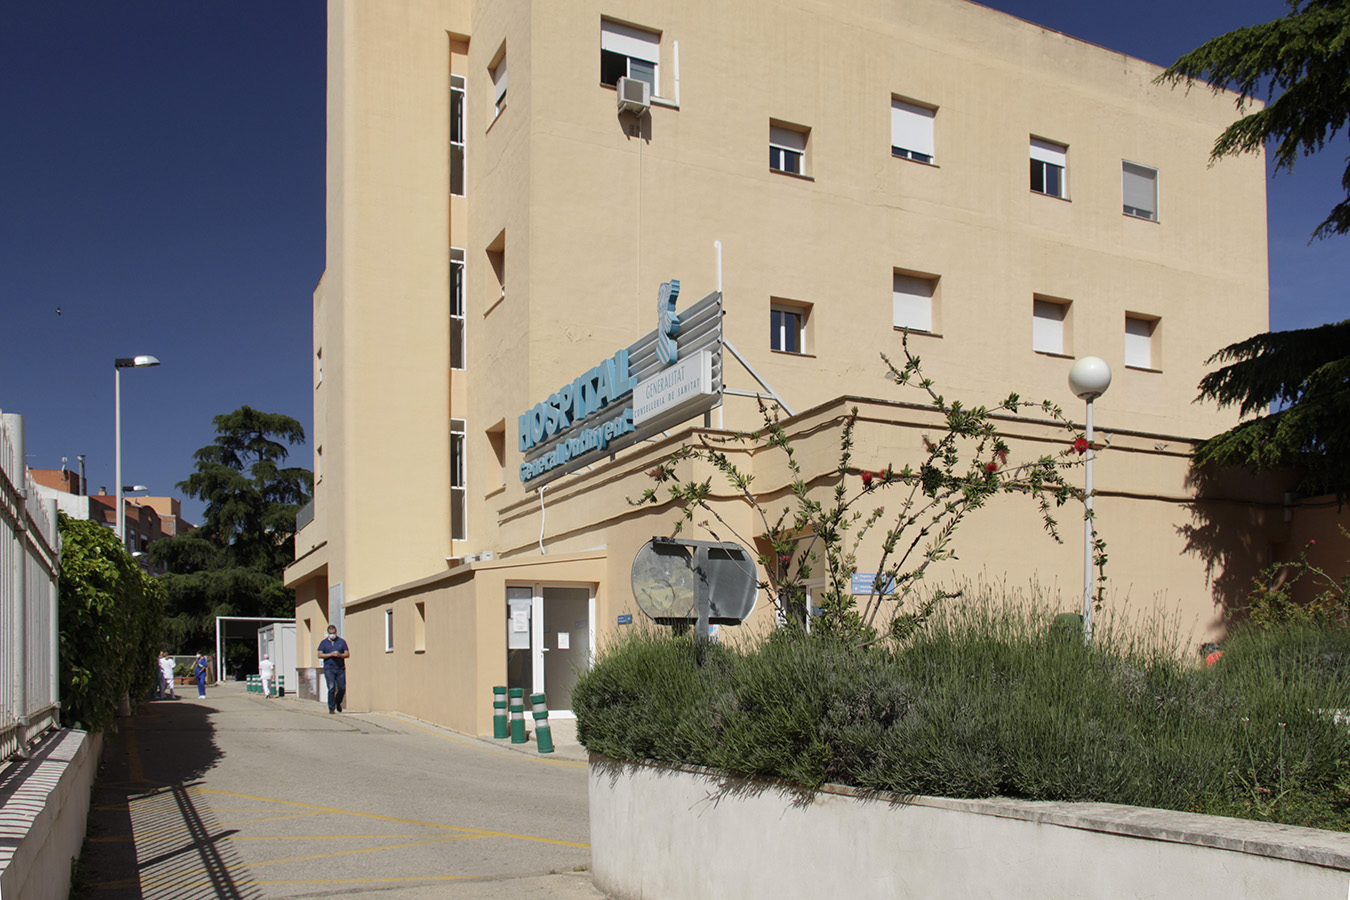 El viejo Hospital tendrá un quirófano de Cirugía Menor Ambulatoria El Periódico de Ontinyent - Noticias en Ontinyent